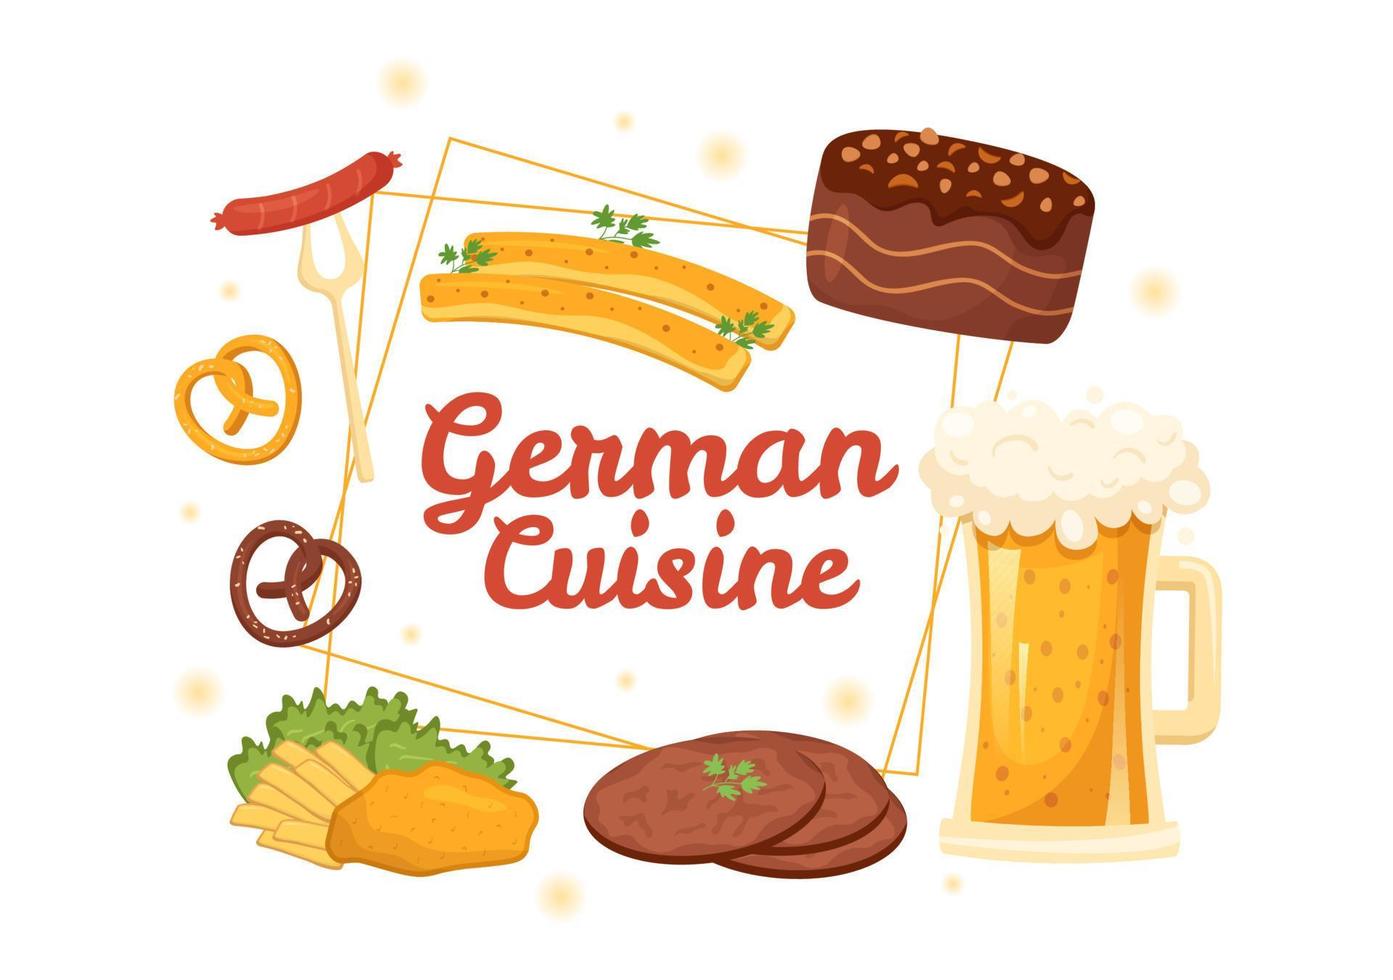 restaurante de comida alemana con una colección de deliciosa cocina tradicional y bebidas en dibujos animados planos dibujados a mano ilustración de plantillas vector